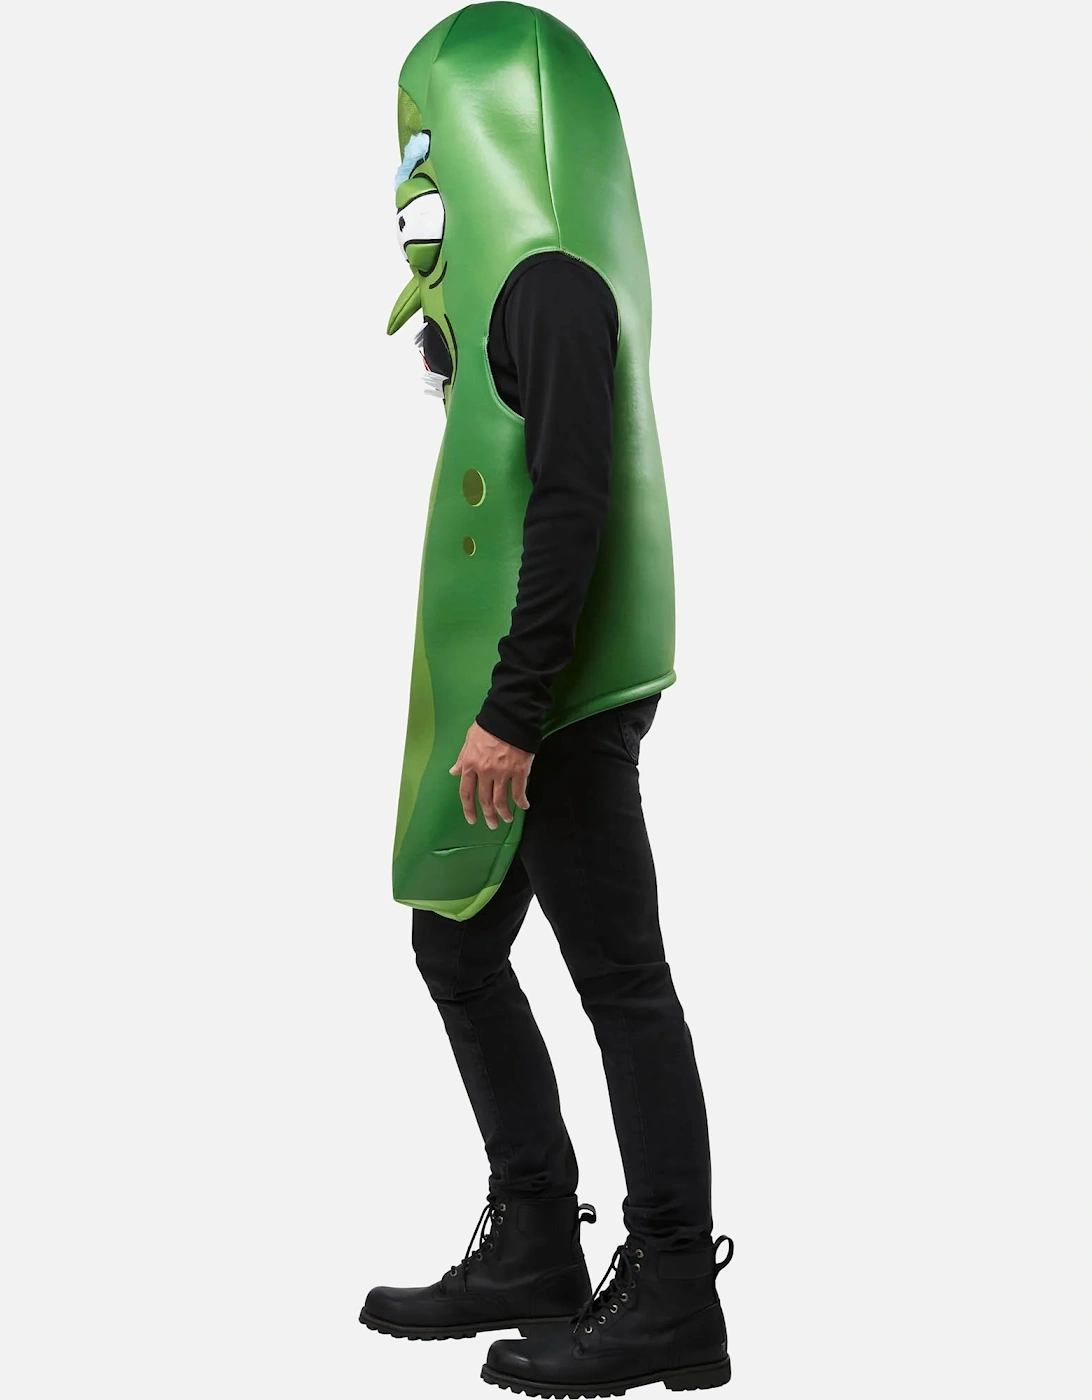 Unisex Adult Pickle Rick Costume